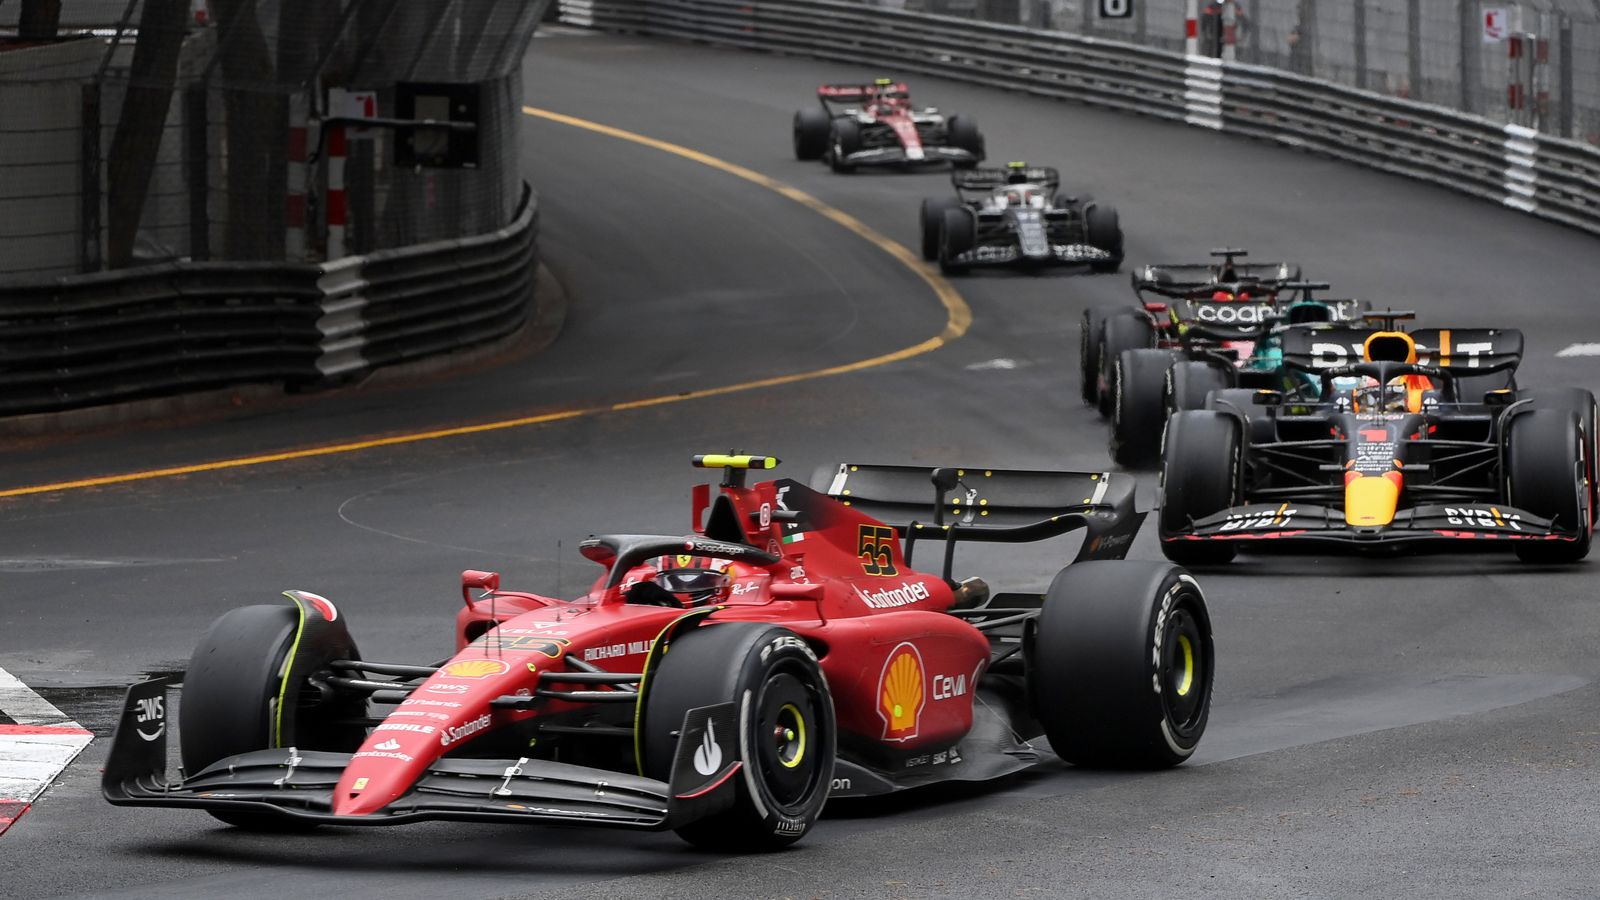 Monaco Grand Prix 2022 - F1 Race